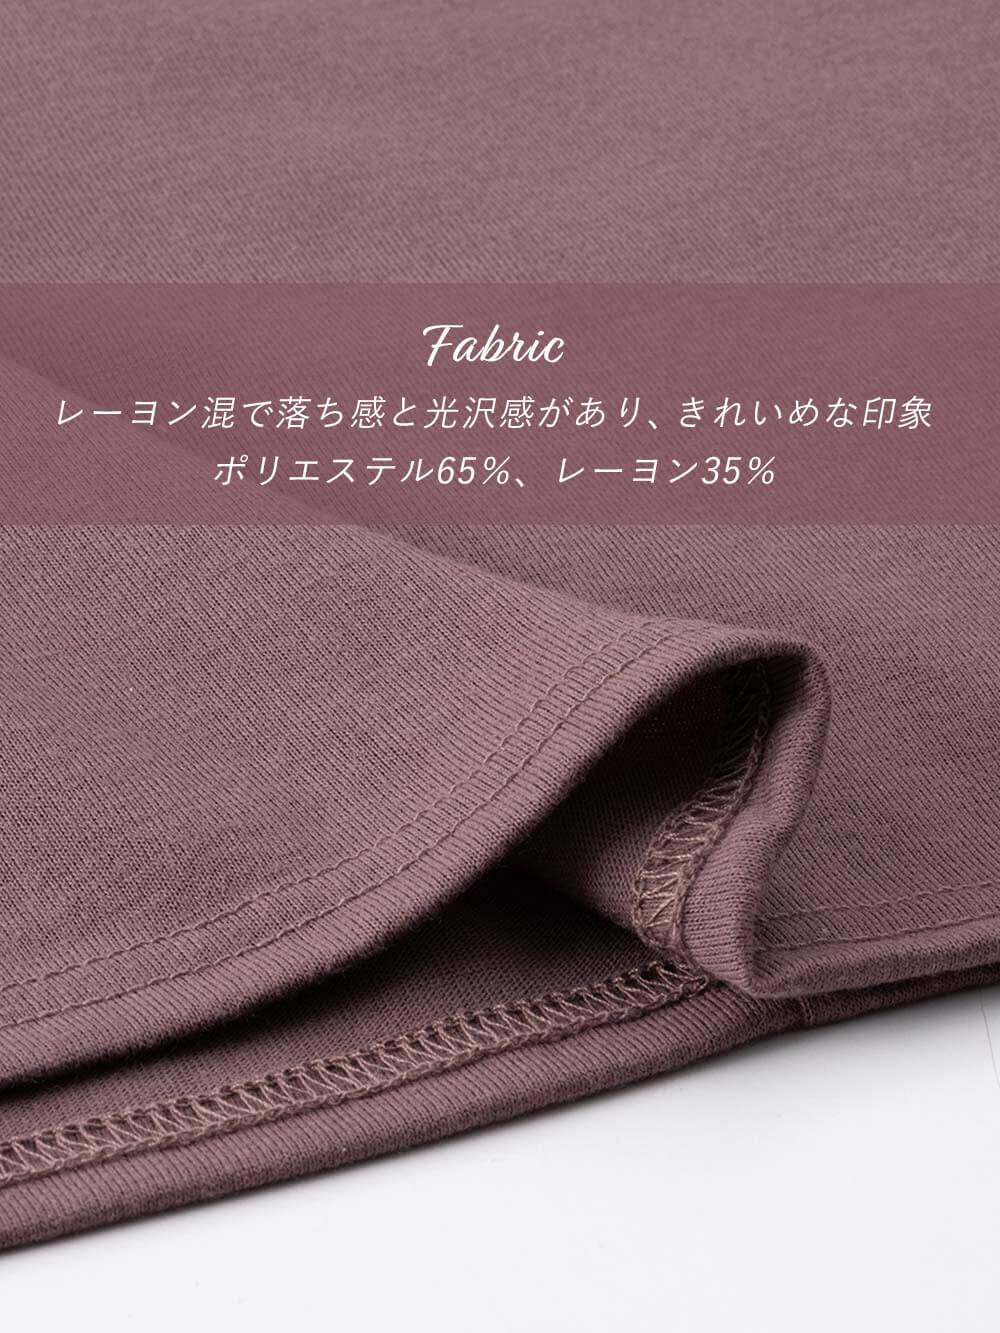 Fabric